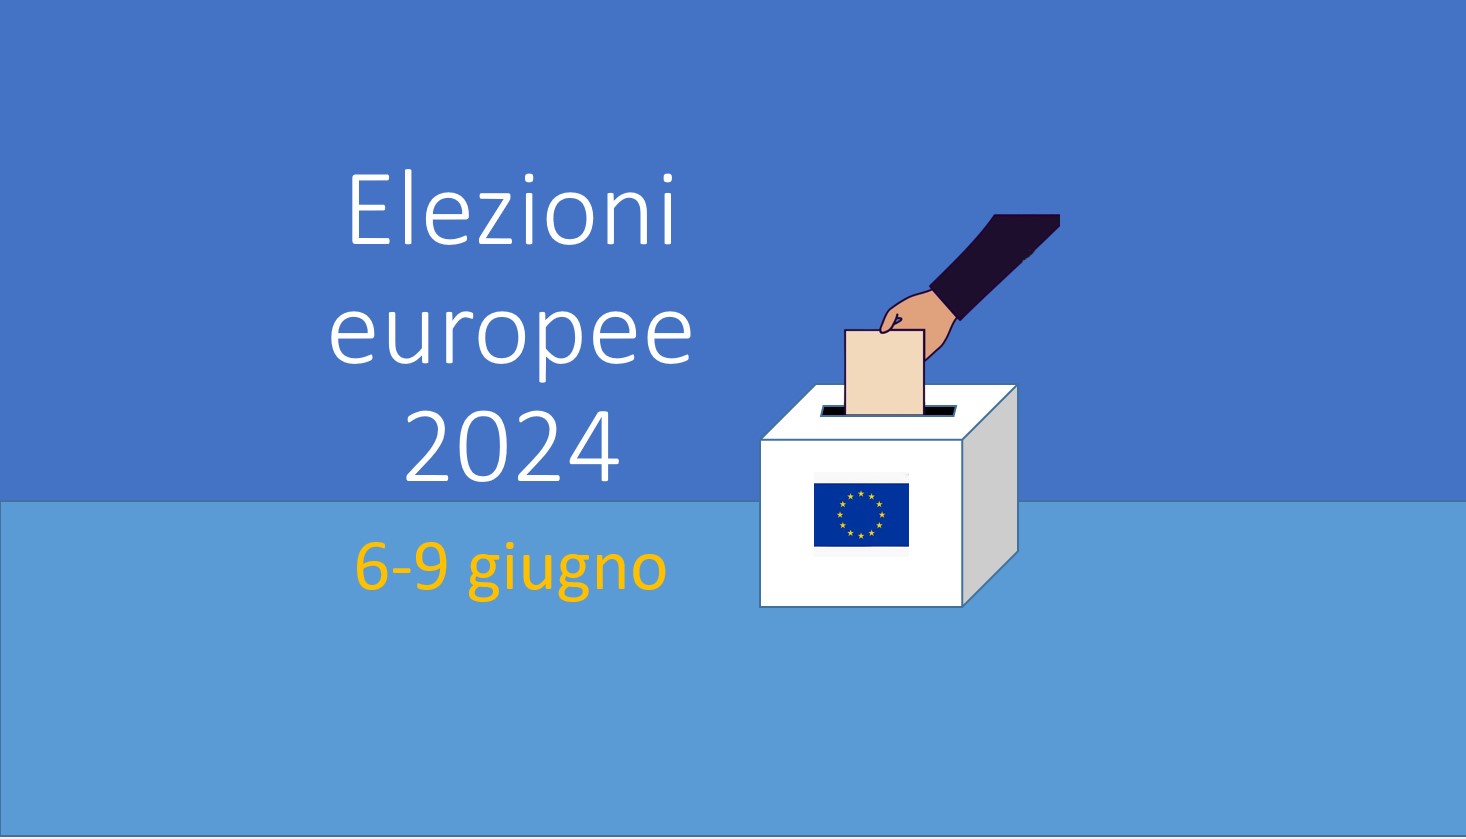 Elezioni europee 2024 - Sabato 8 e domenica 9 giugno si voterà per eleggere i Membri del Parlamento Europeo.